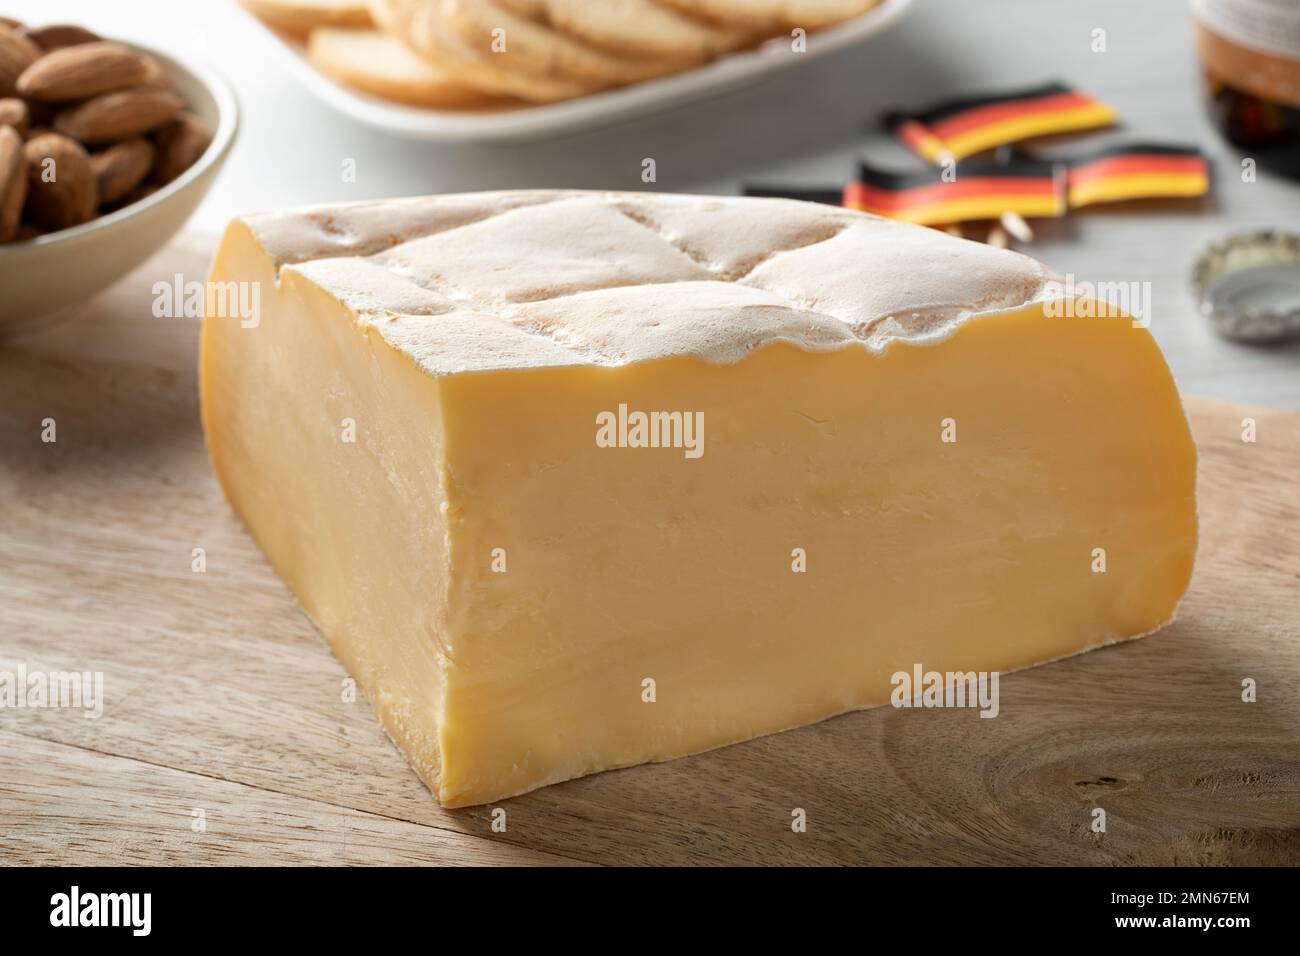 Morceau de Brugge Blomme frais, fromage belge, gros plan sur une planche à découper Banque D'Images